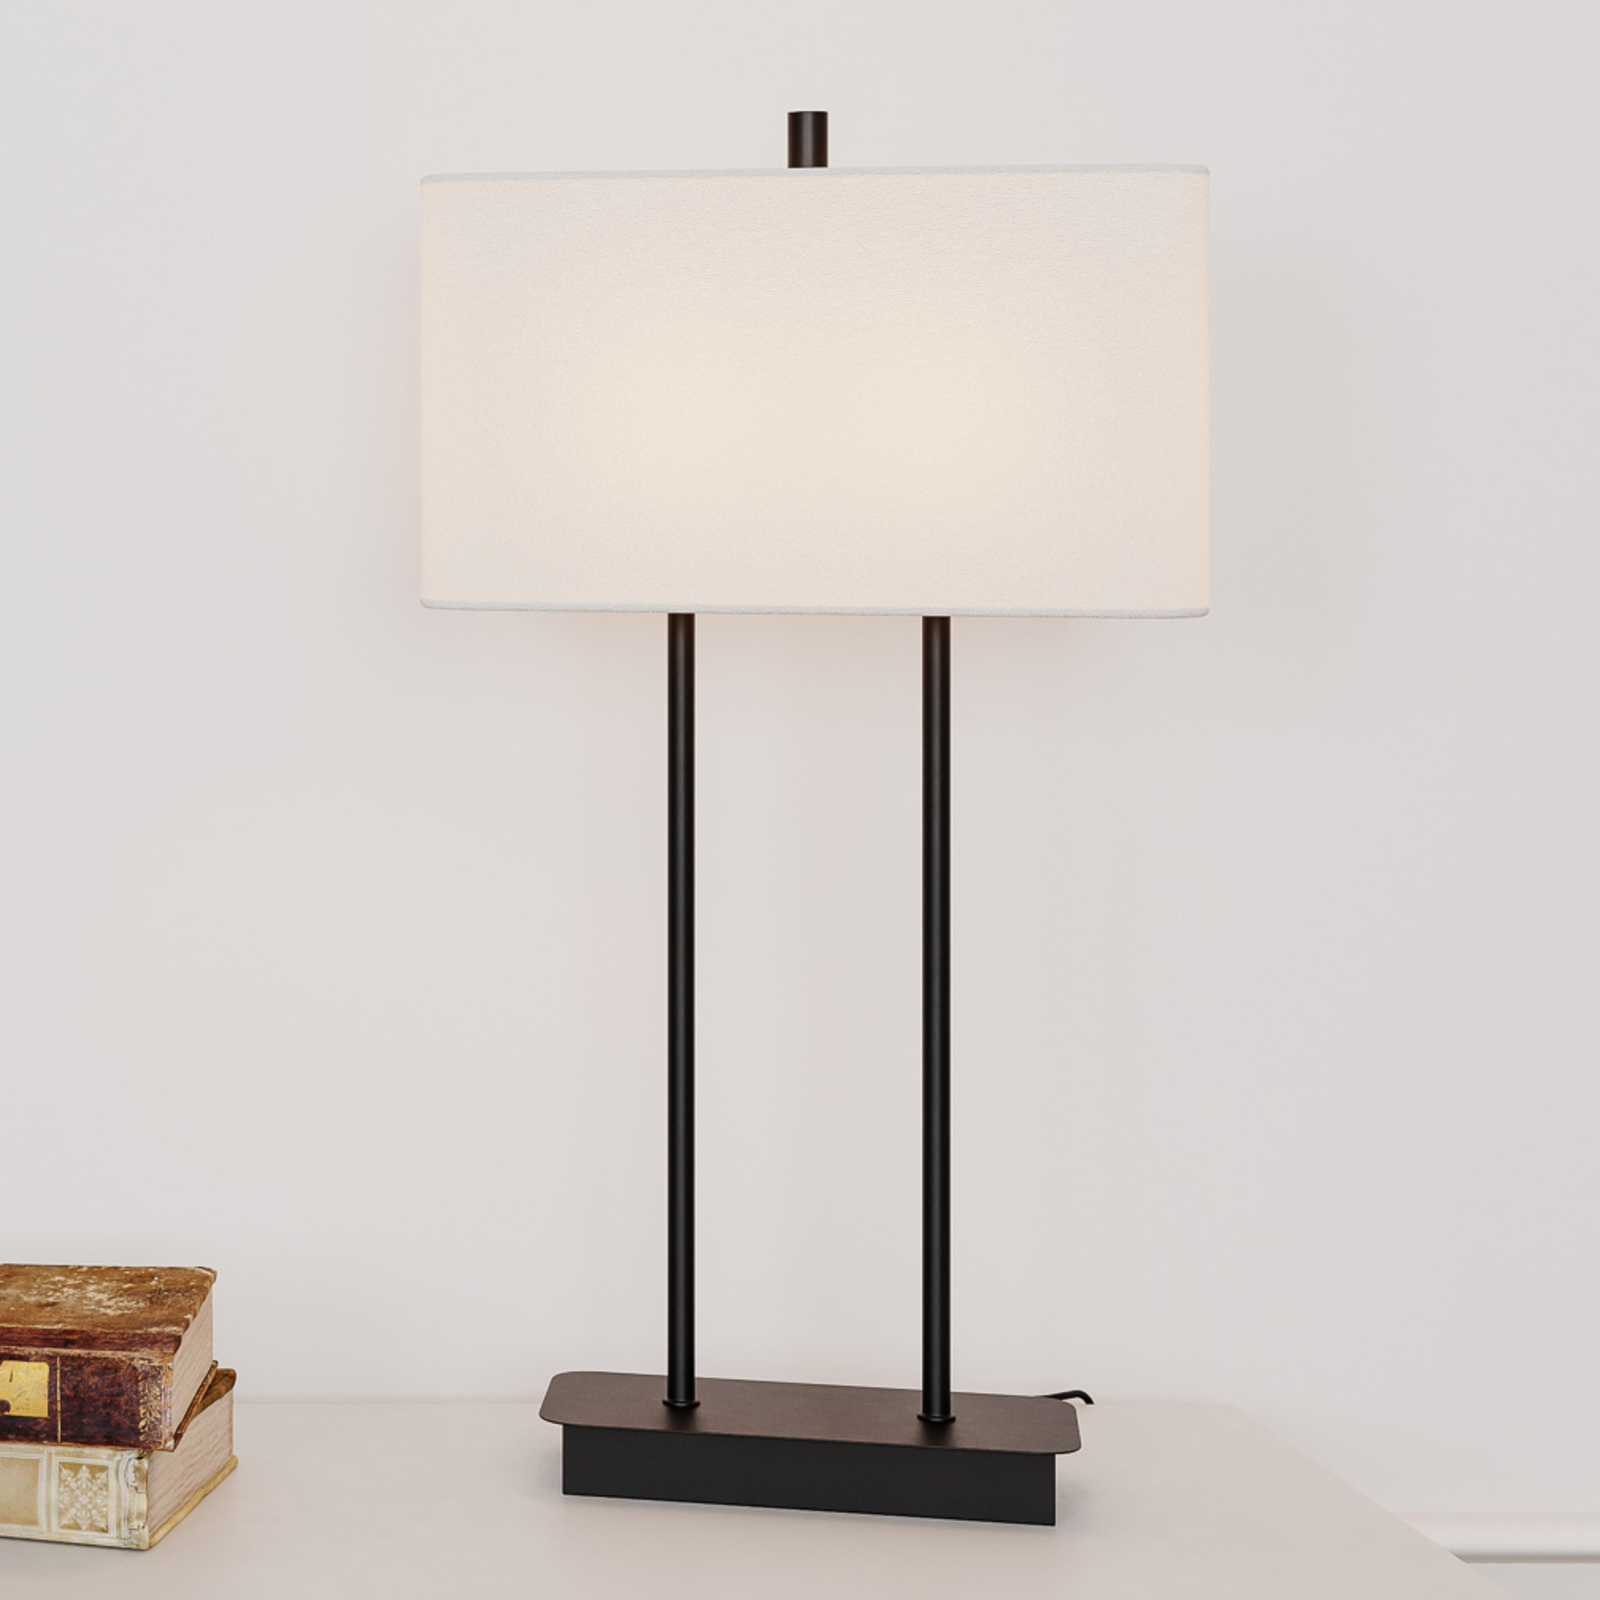 By Rydéns Luton lampa stołowa, biała/czarna, 56cm